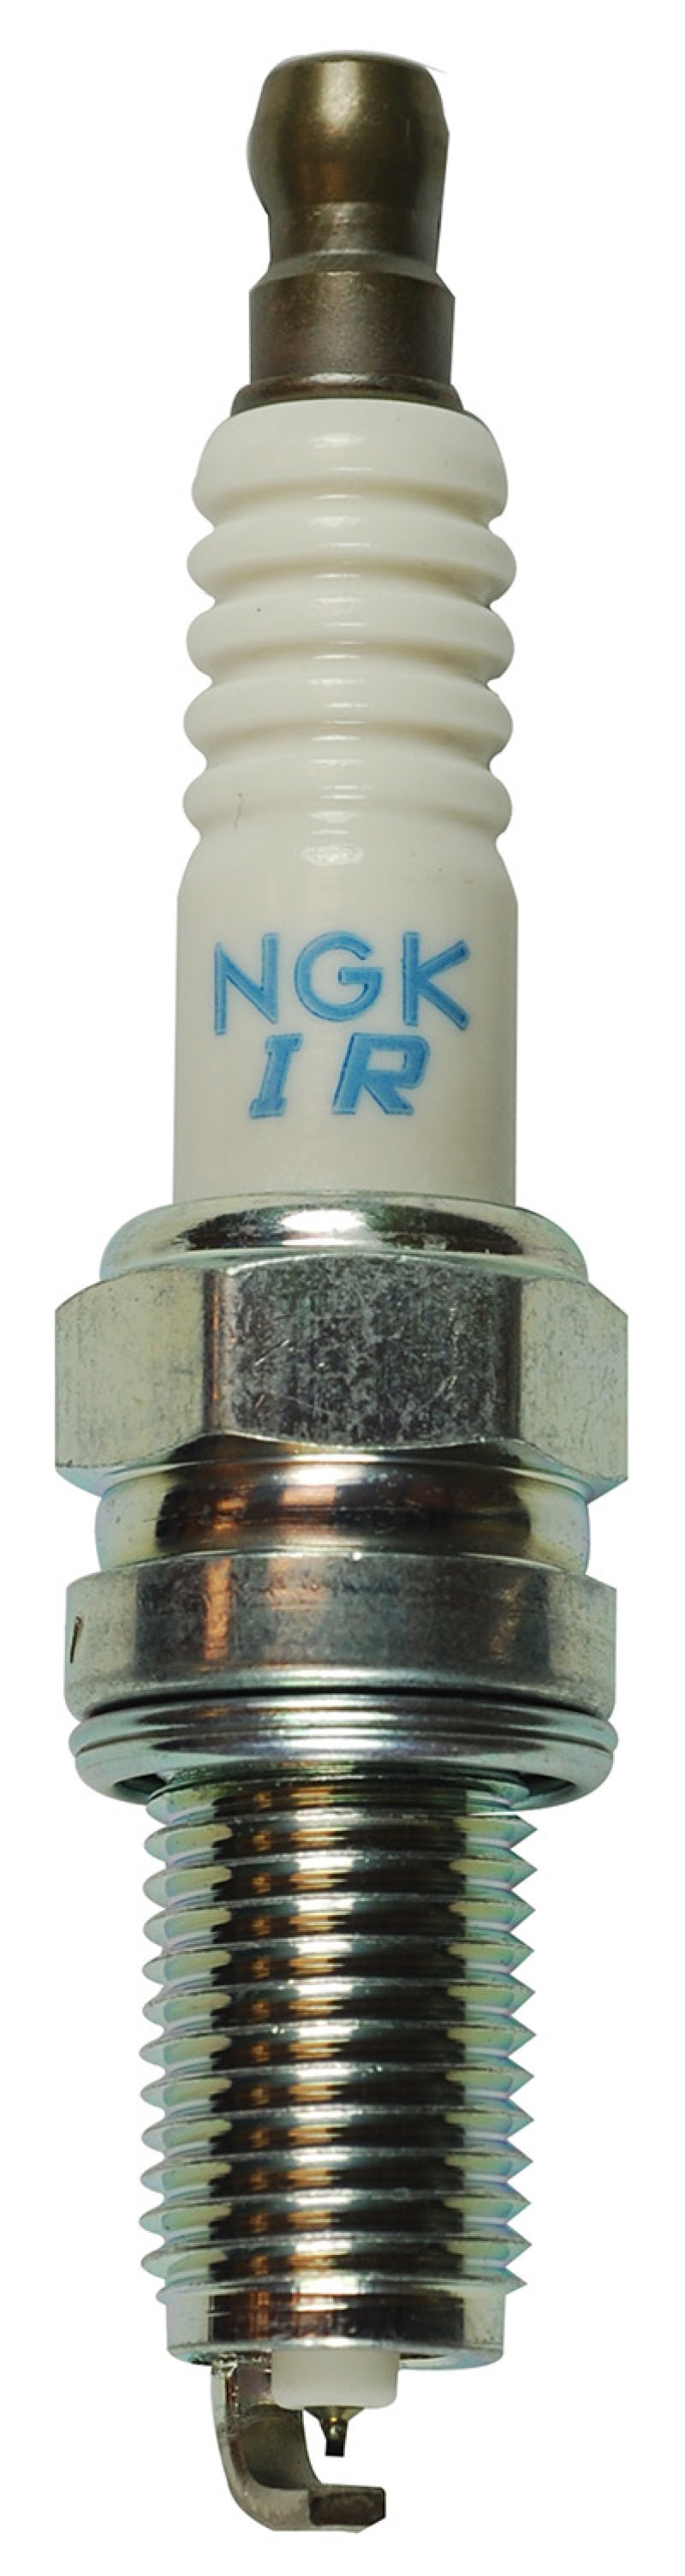 NGK Laser Iridium Spark Plug Box of 4 (IKR7H8)